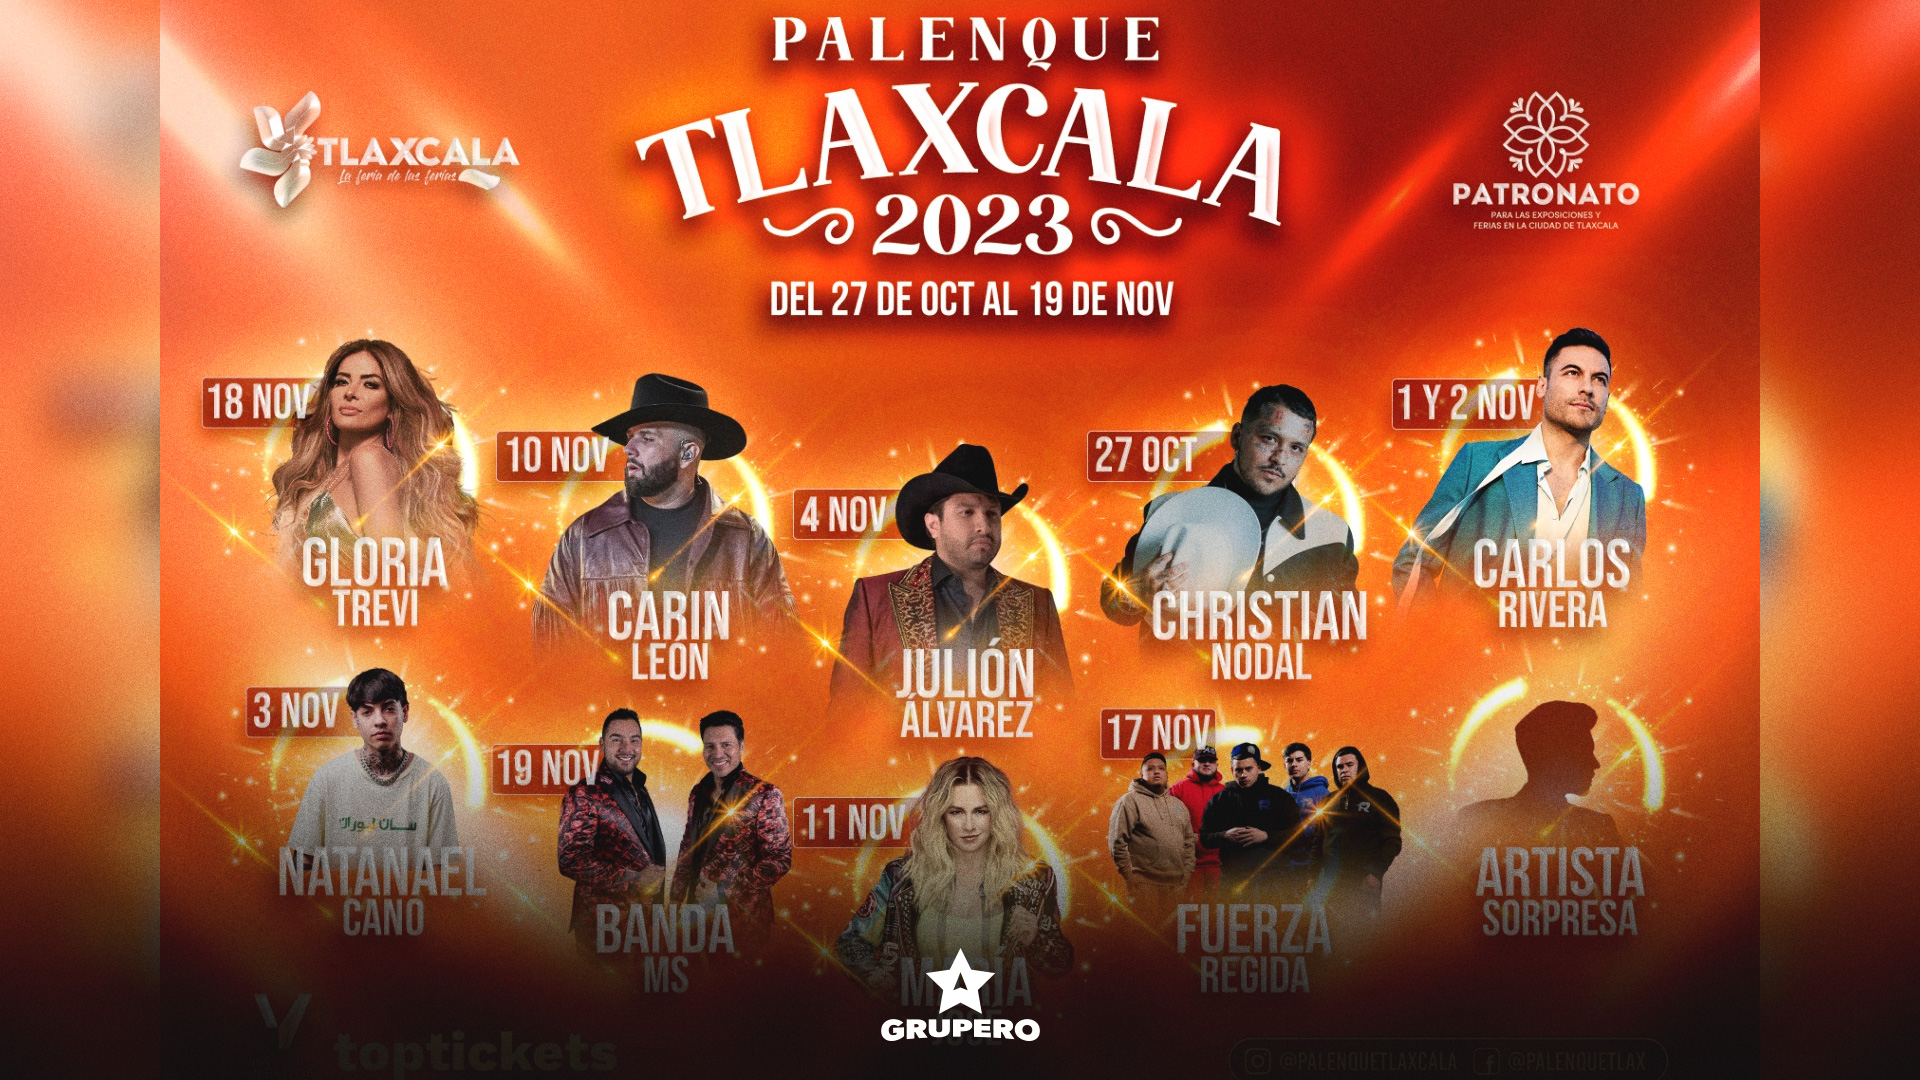 Sale a la luz el cartel oficial del Palenque de Tlaxcala 2023